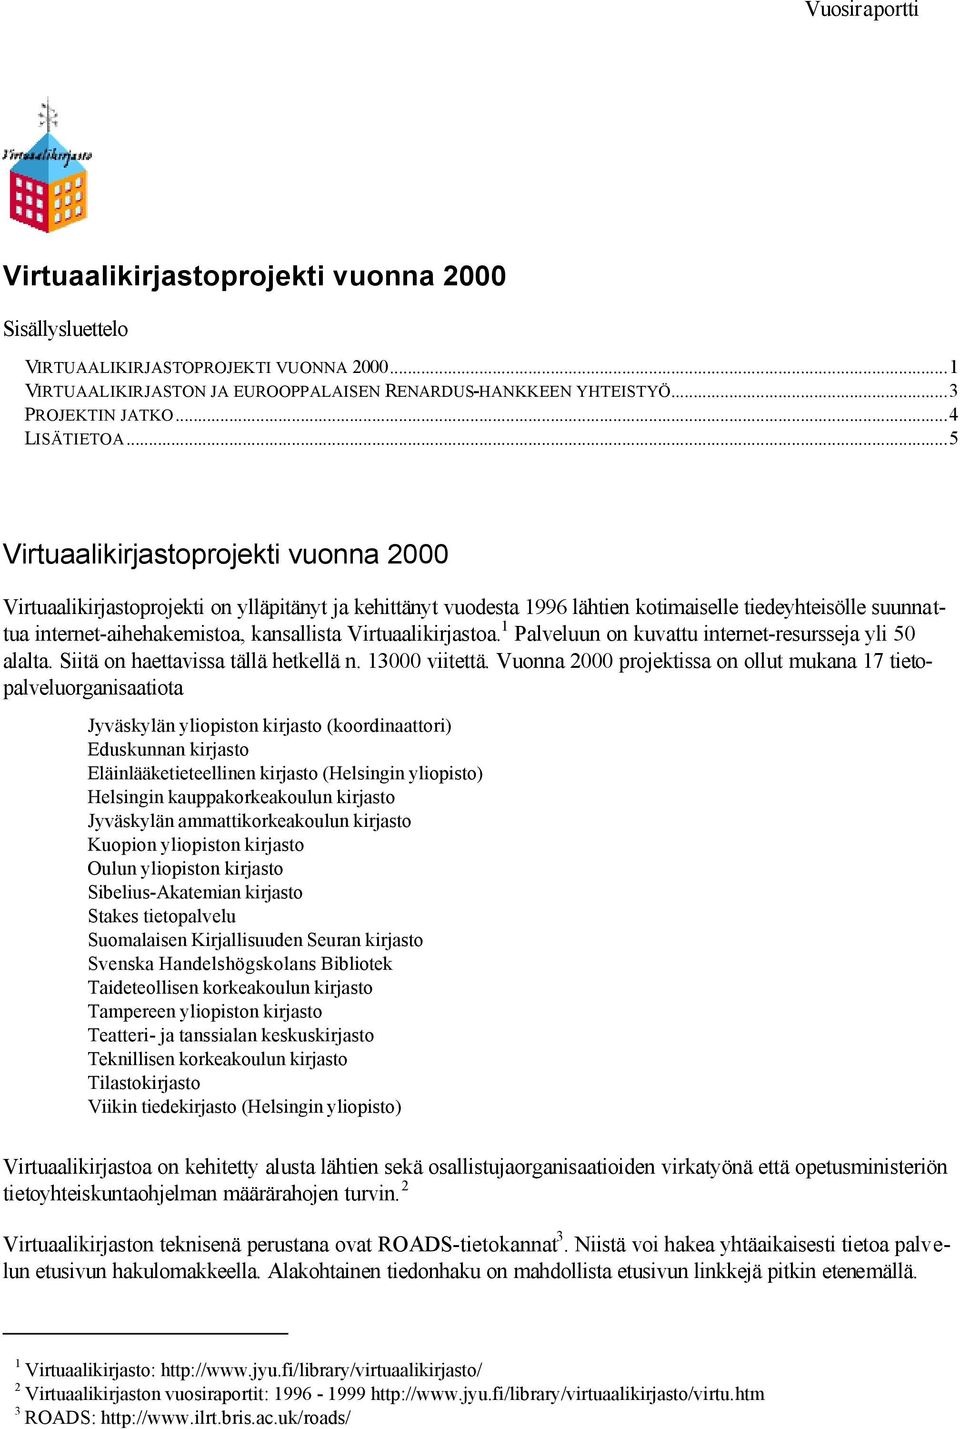 ..5 Virtuaalikirjastoprojekti vuonna 2000 Virtuaalikirjastoprojekti on ylläpitänyt ja kehittänyt vuodesta 1996 lähtien kotimaiselle tiedeyhteisölle suunnattua internet-aihehakemistoa, kansallista